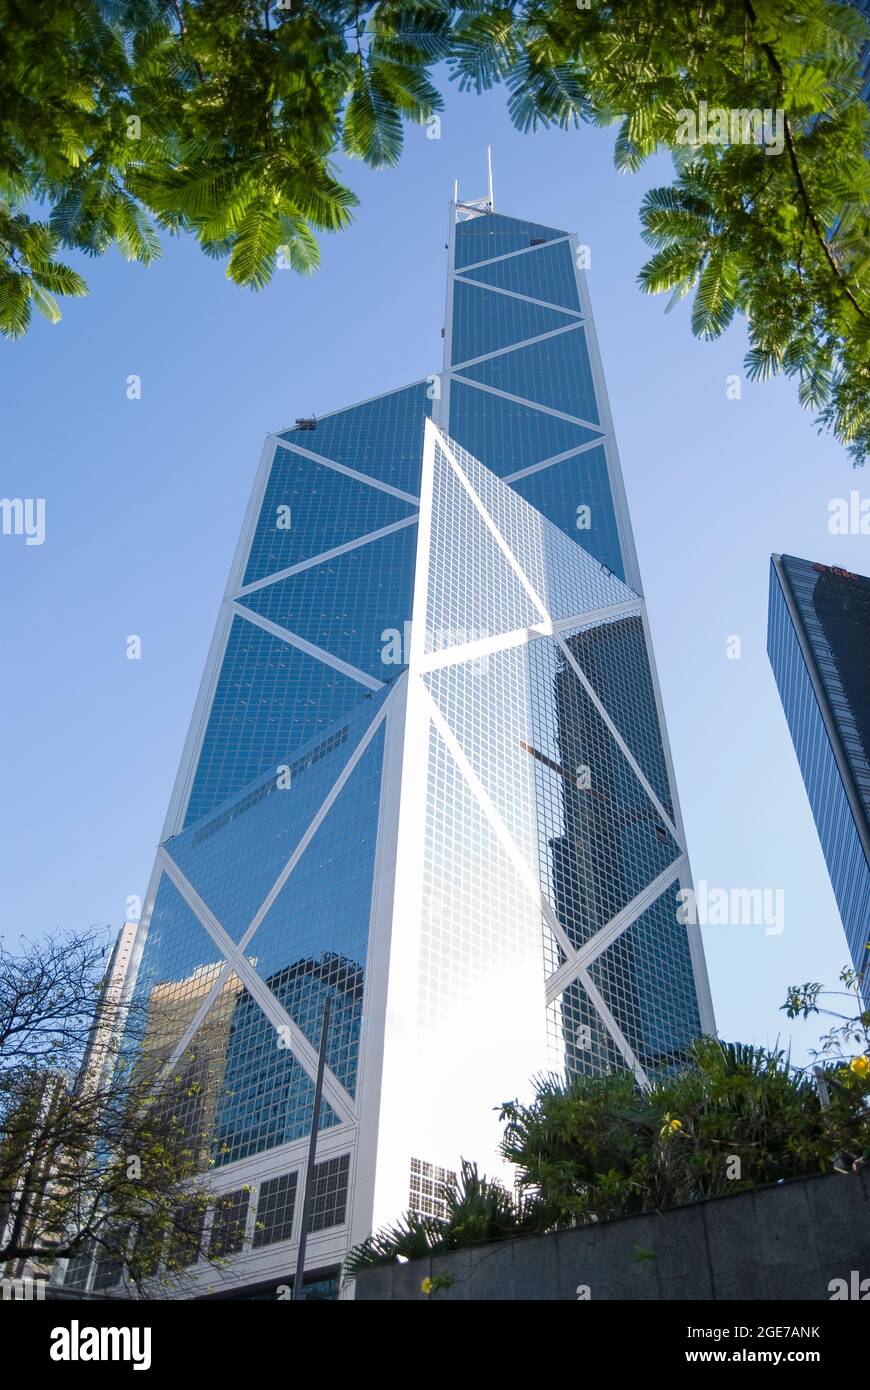 The Bank of China Tower, Sheung Wan, Victoria Harbour, Hong Kong Island, Hong Kong, People's Republic of China Stock Photo